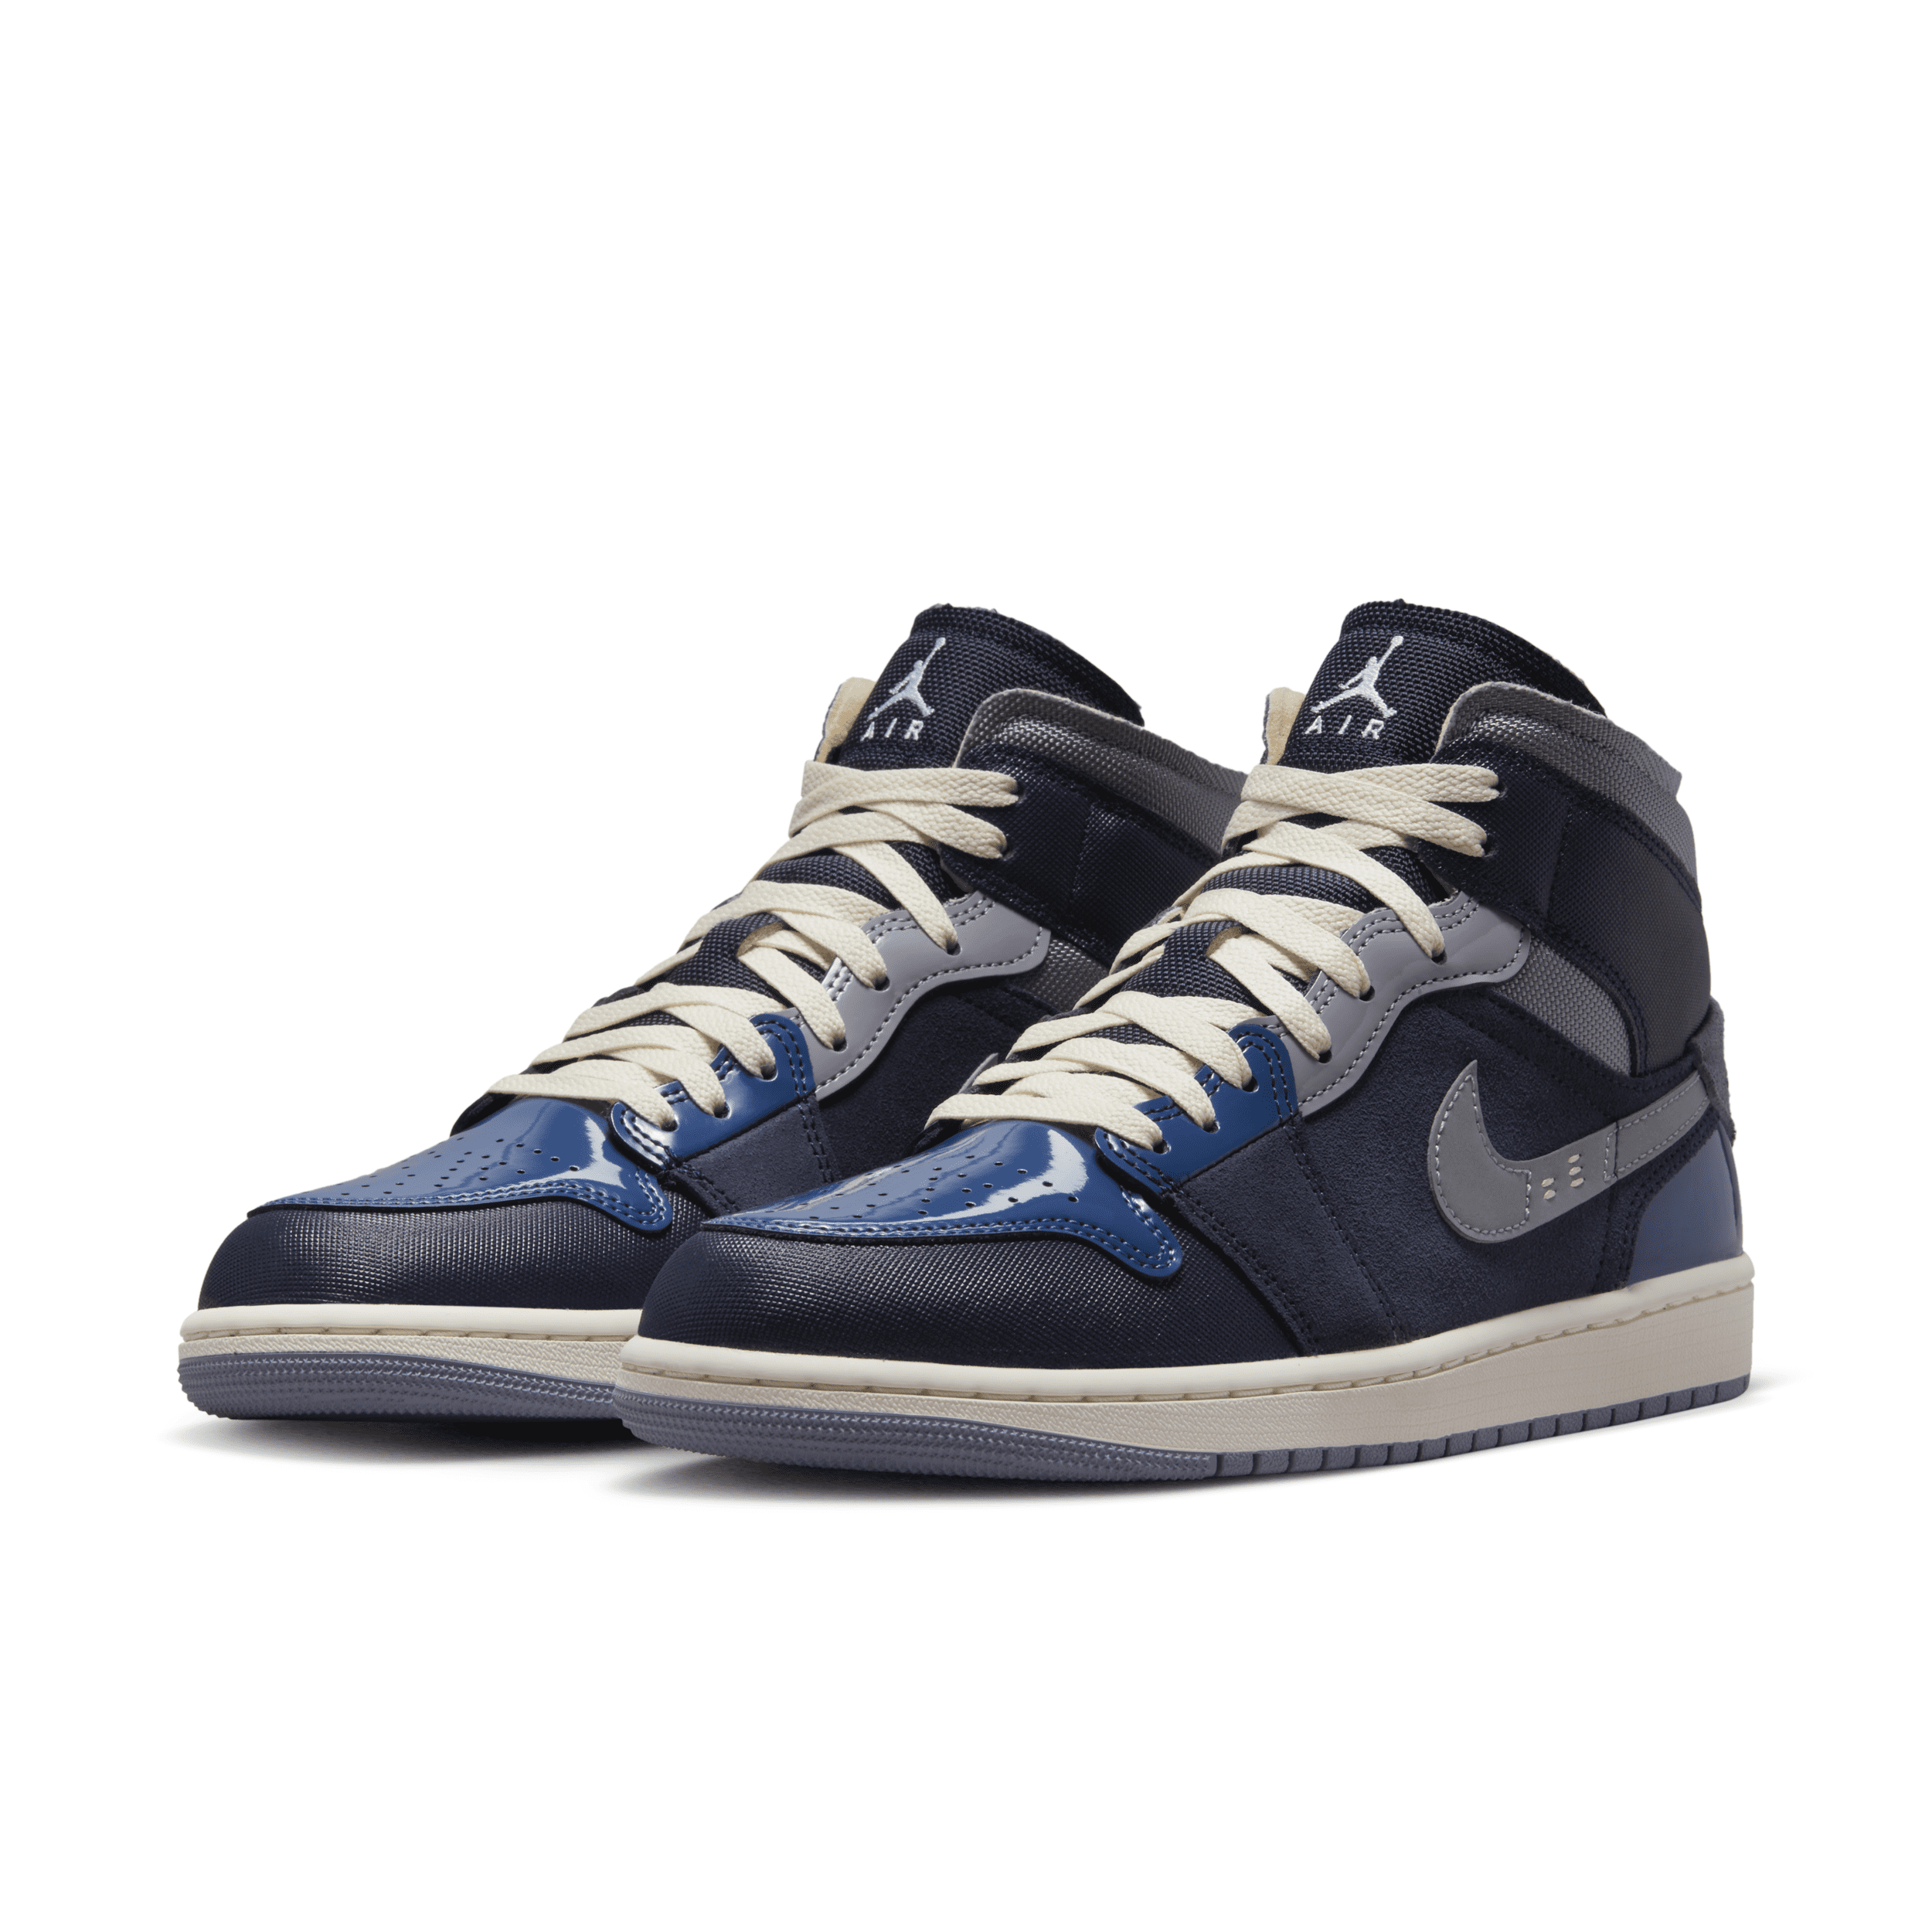 Nike Men's Air Jordan 1 Mid SE Shoes (Obsidian/Blue/Slate) $109 + Free Shipping